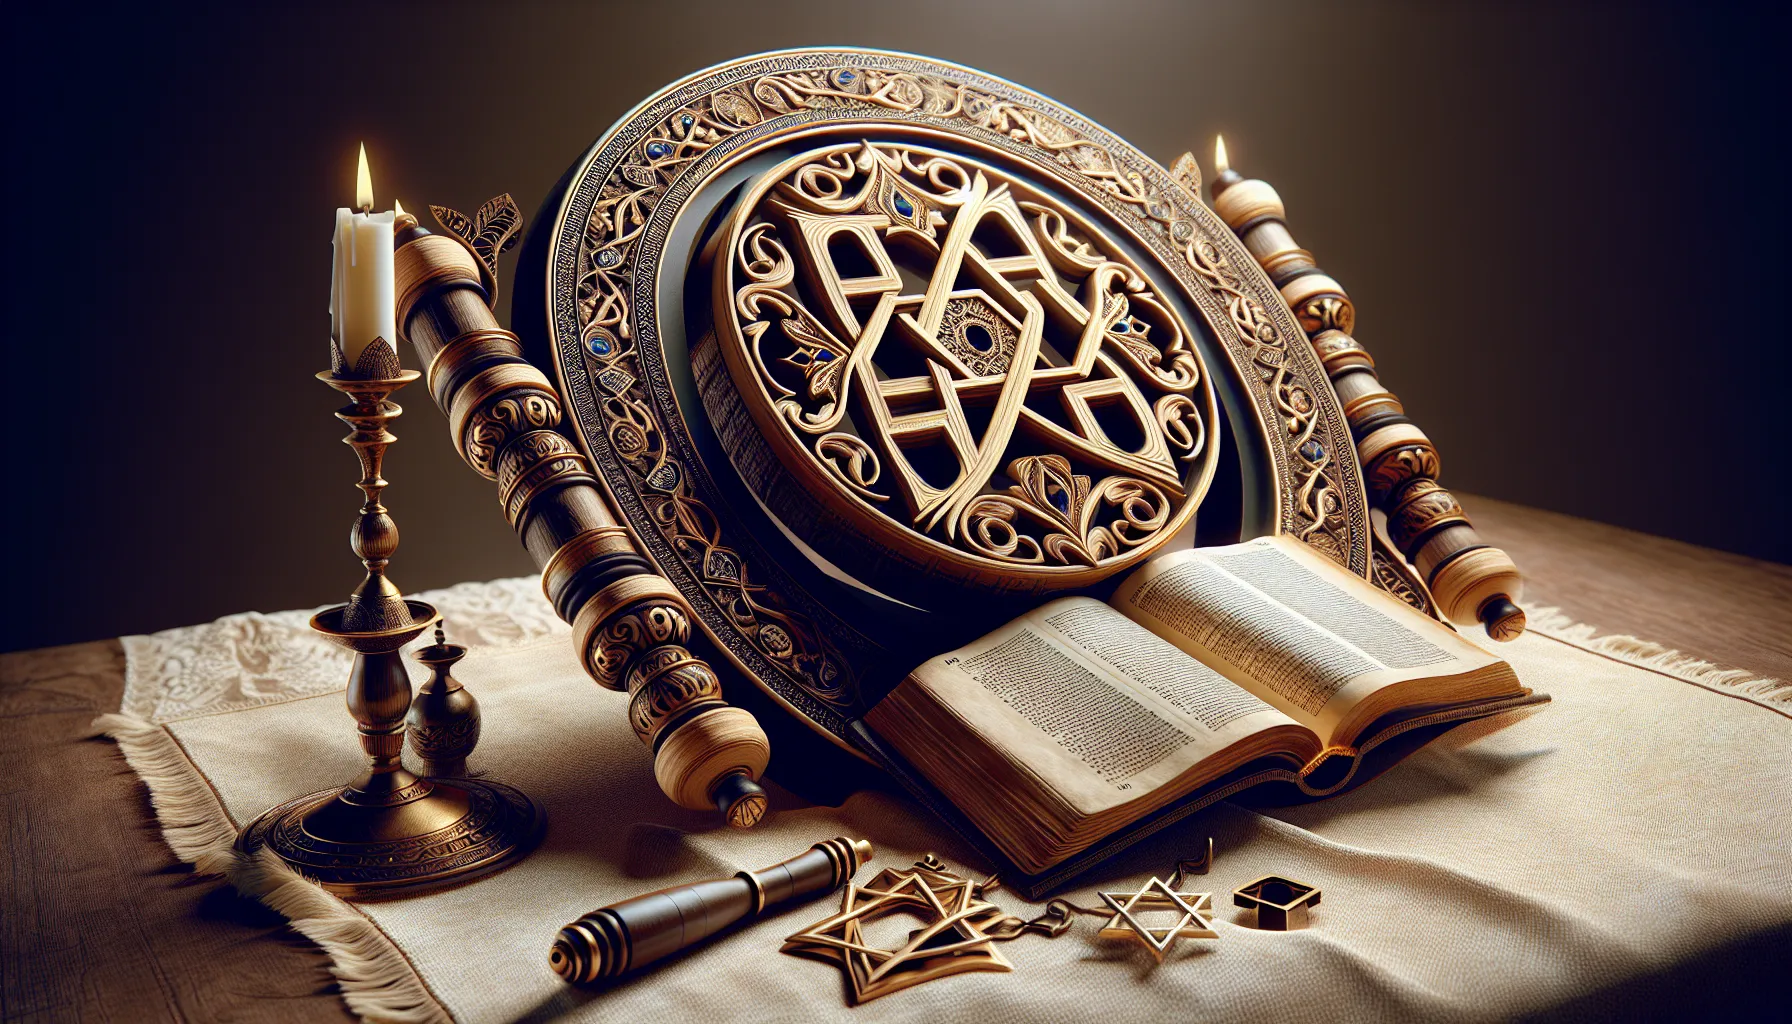 Imagen representativa del Judaísmo con símbolos religiosos y una Torá abierta